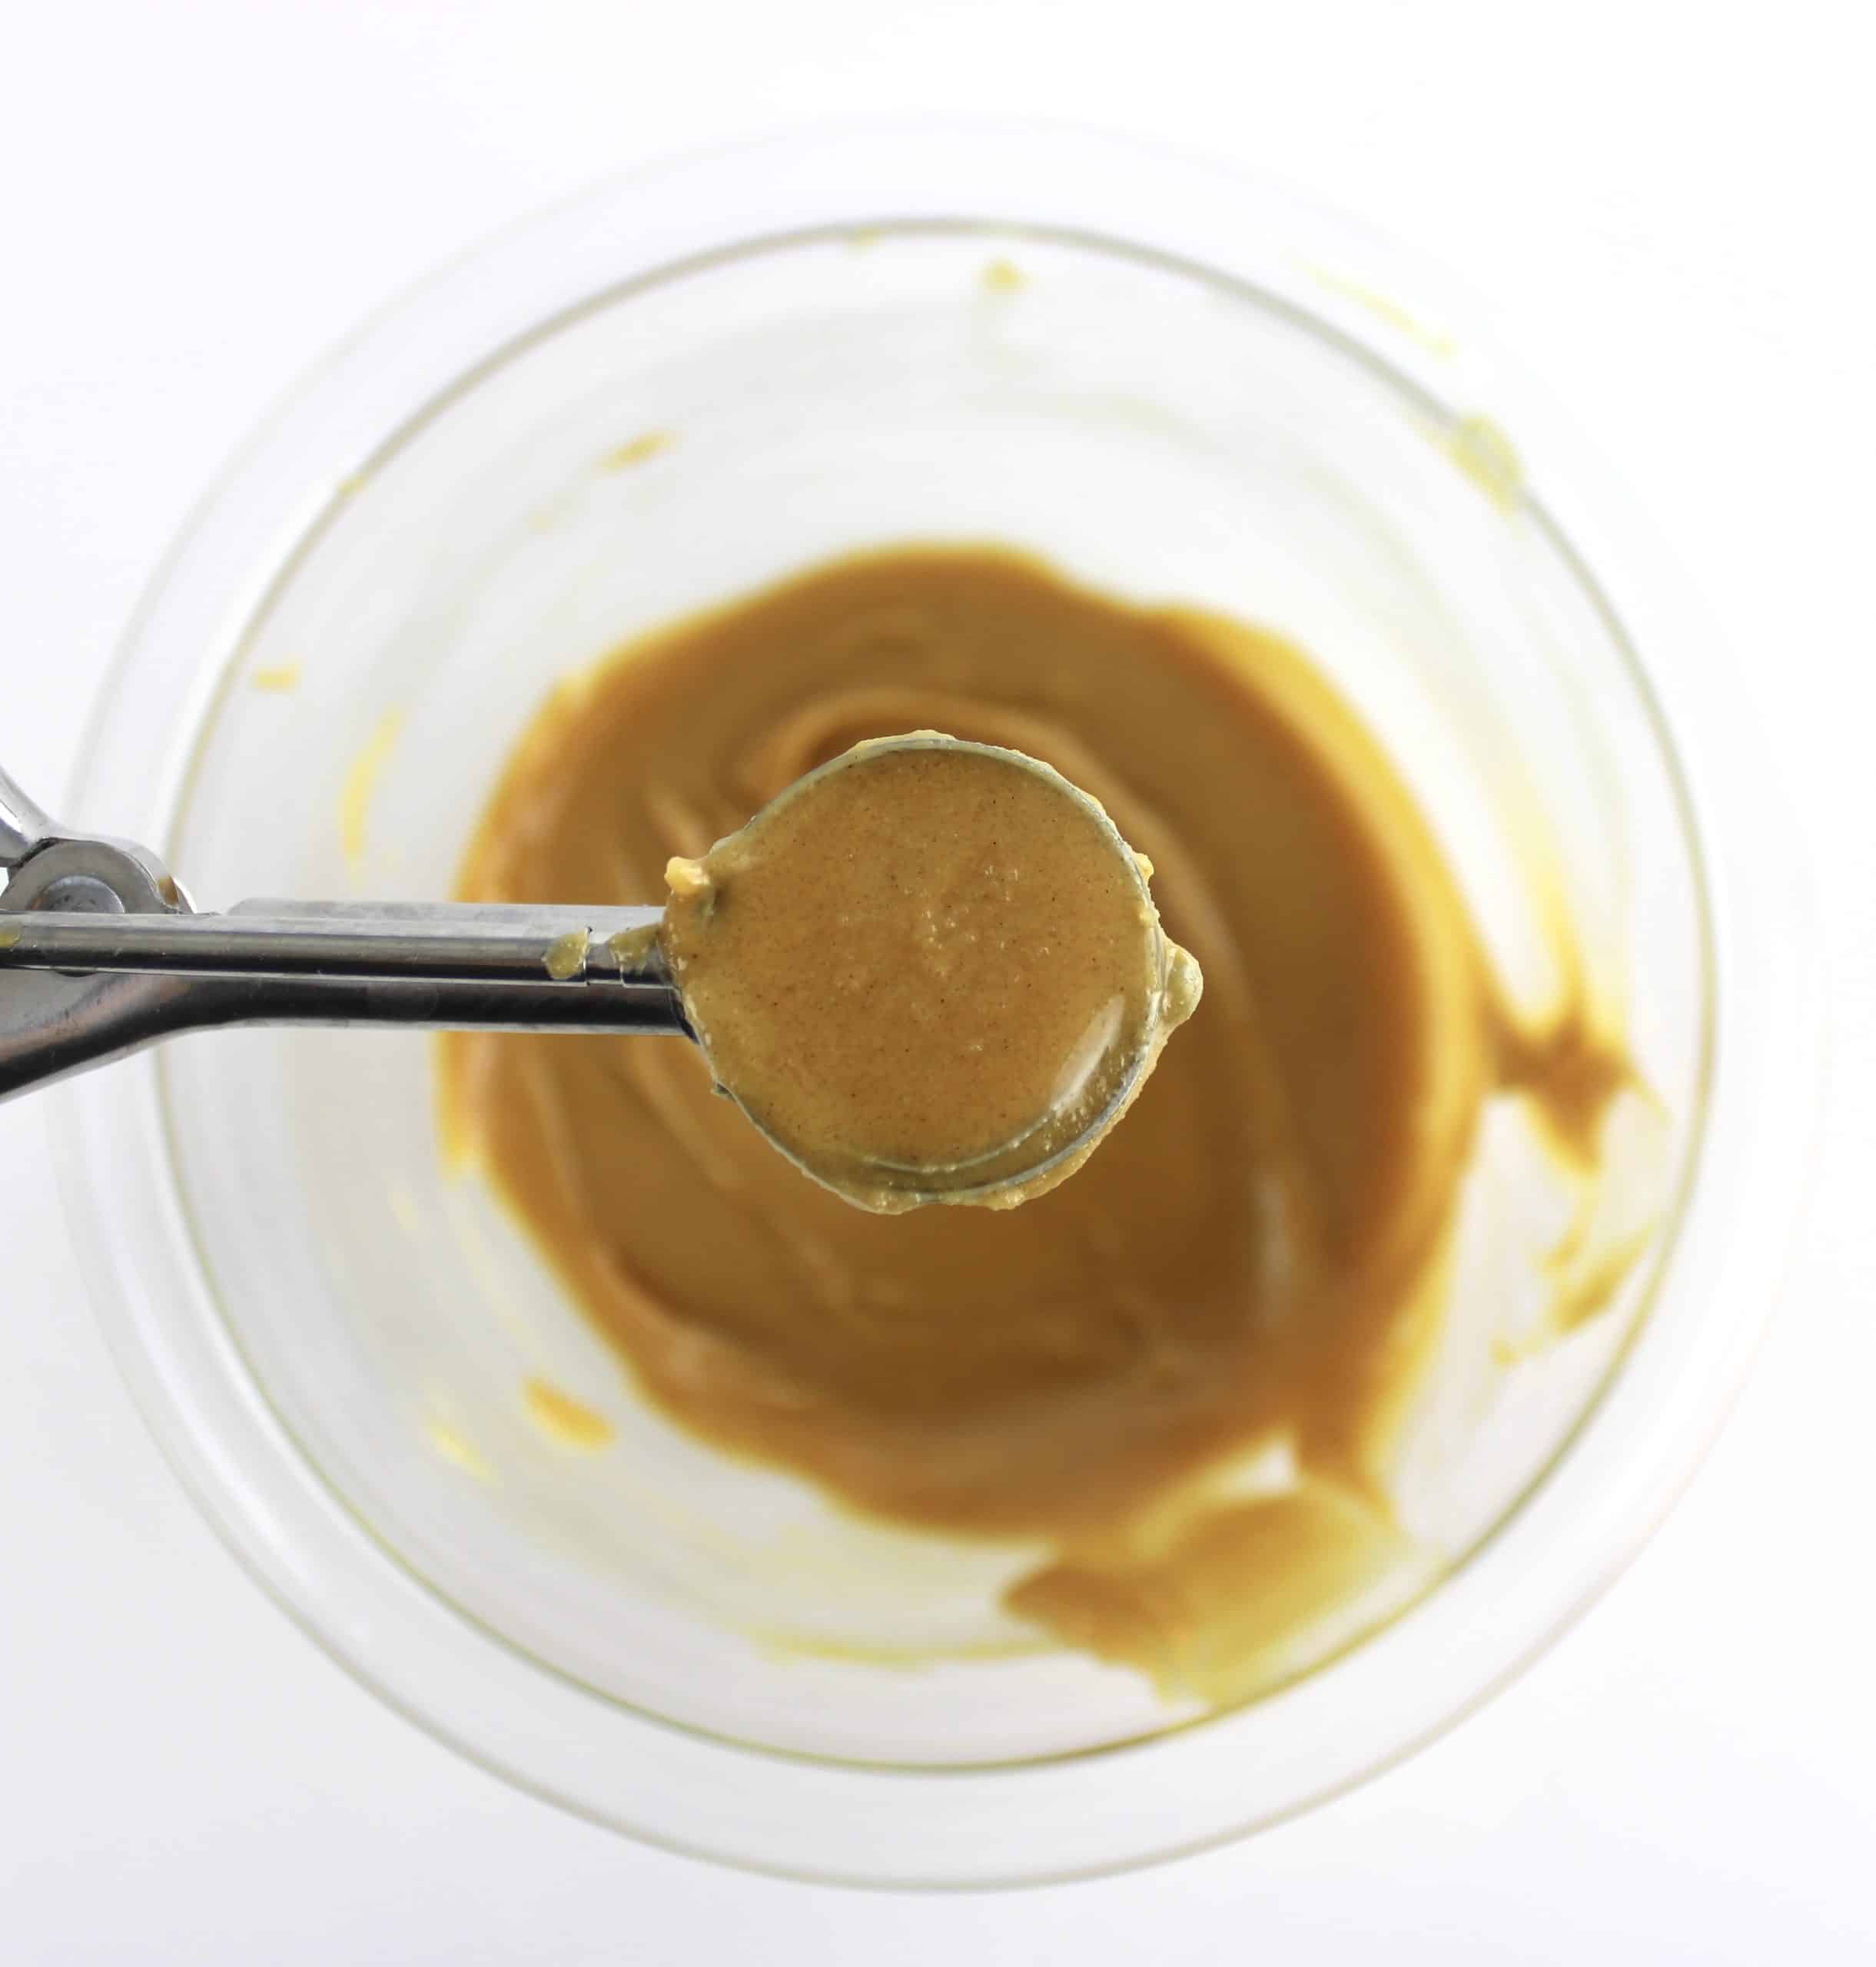 peanut butter mixture in mini scooper